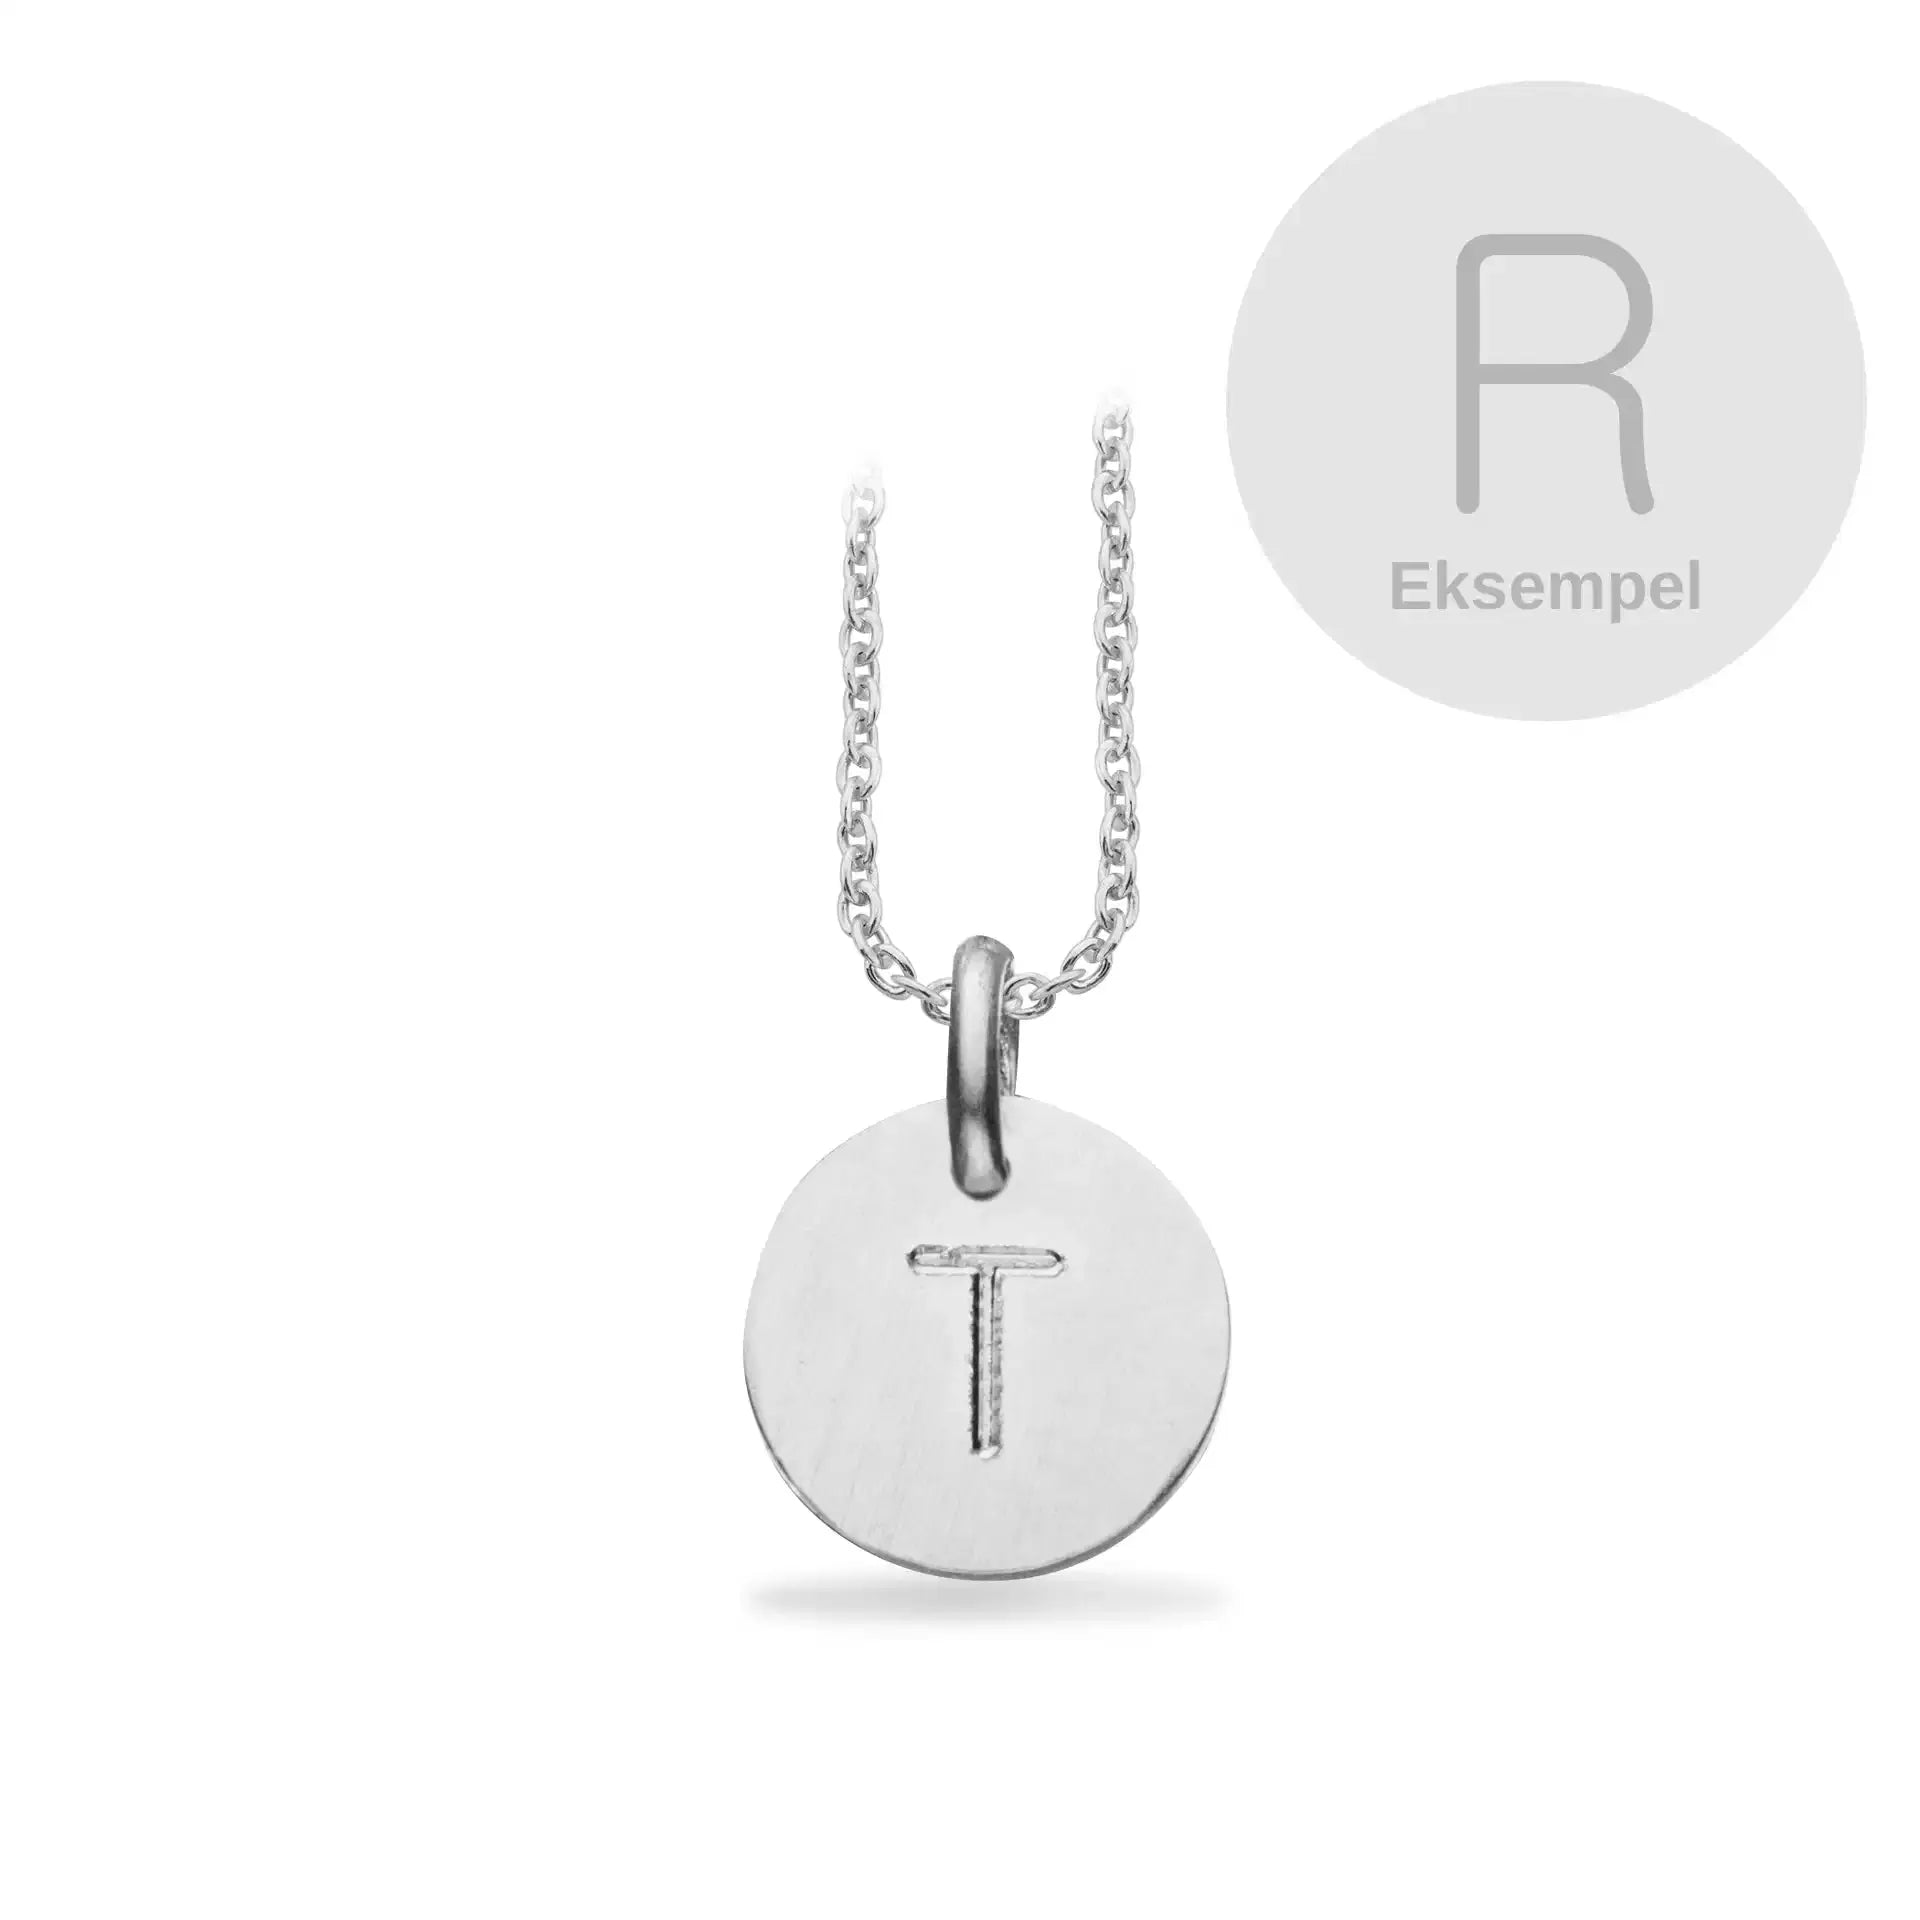 TagMe rund  R sølv m/kæde fra Scrouples Jewellery